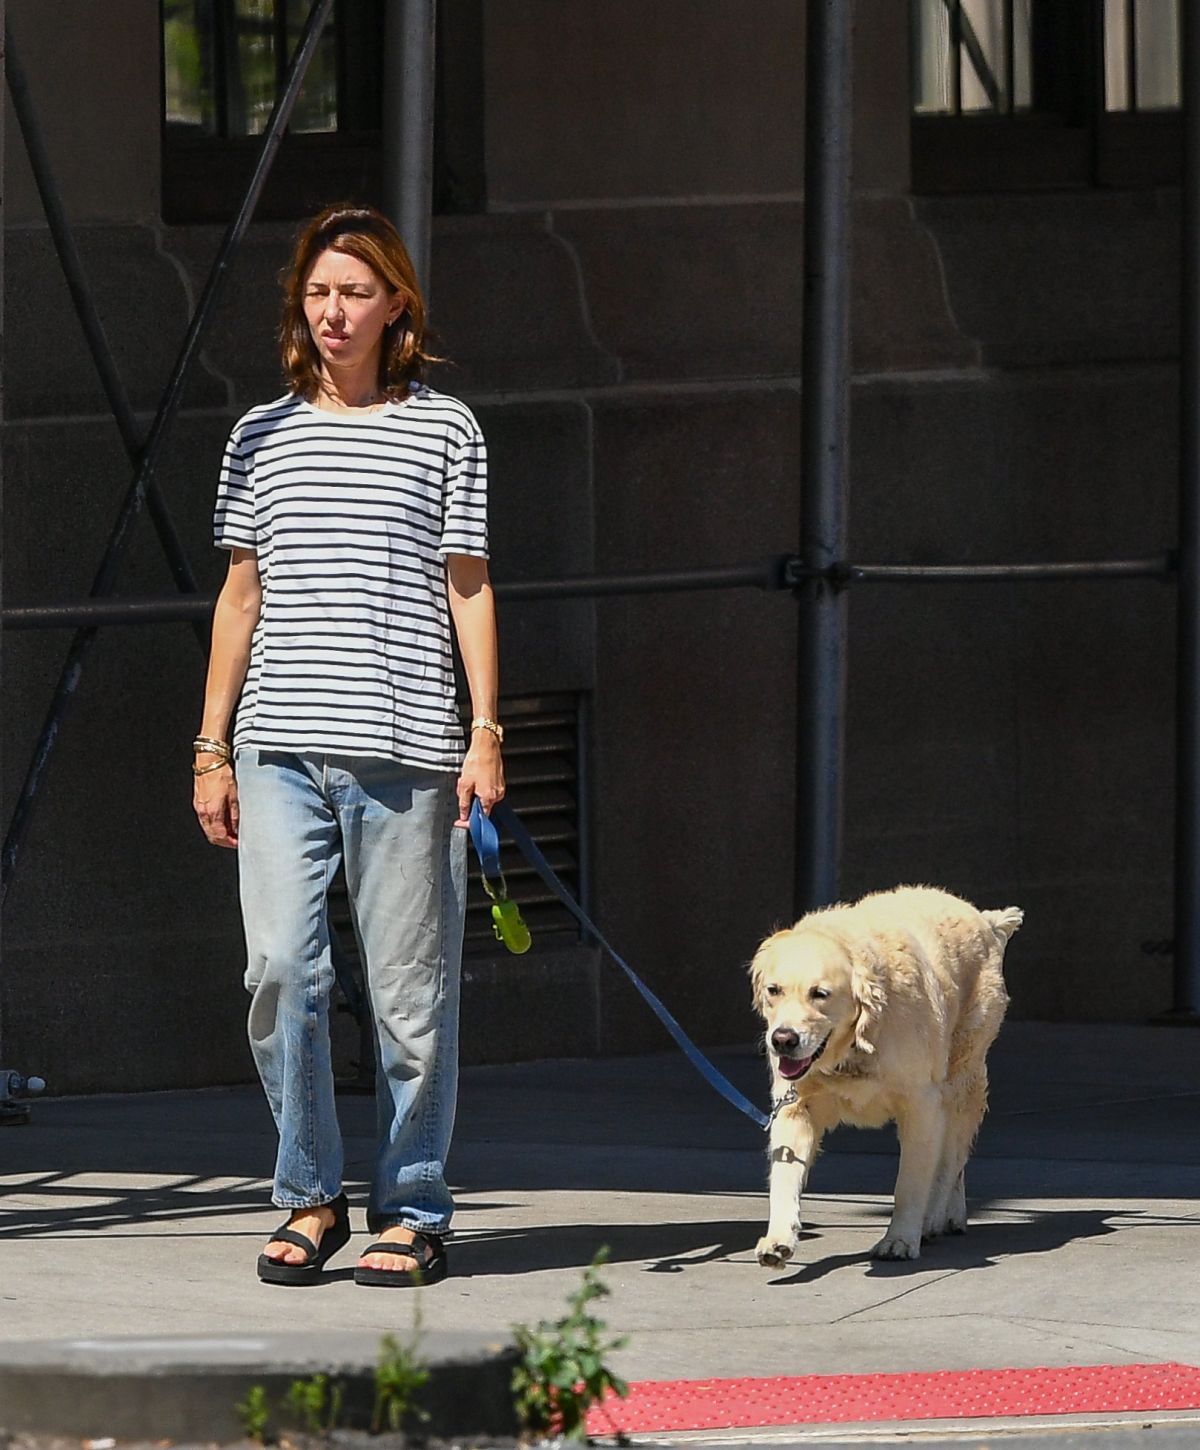 Sofia Coppola - Walks Her Dog in NYC 10/20/2021 • CelebMafia